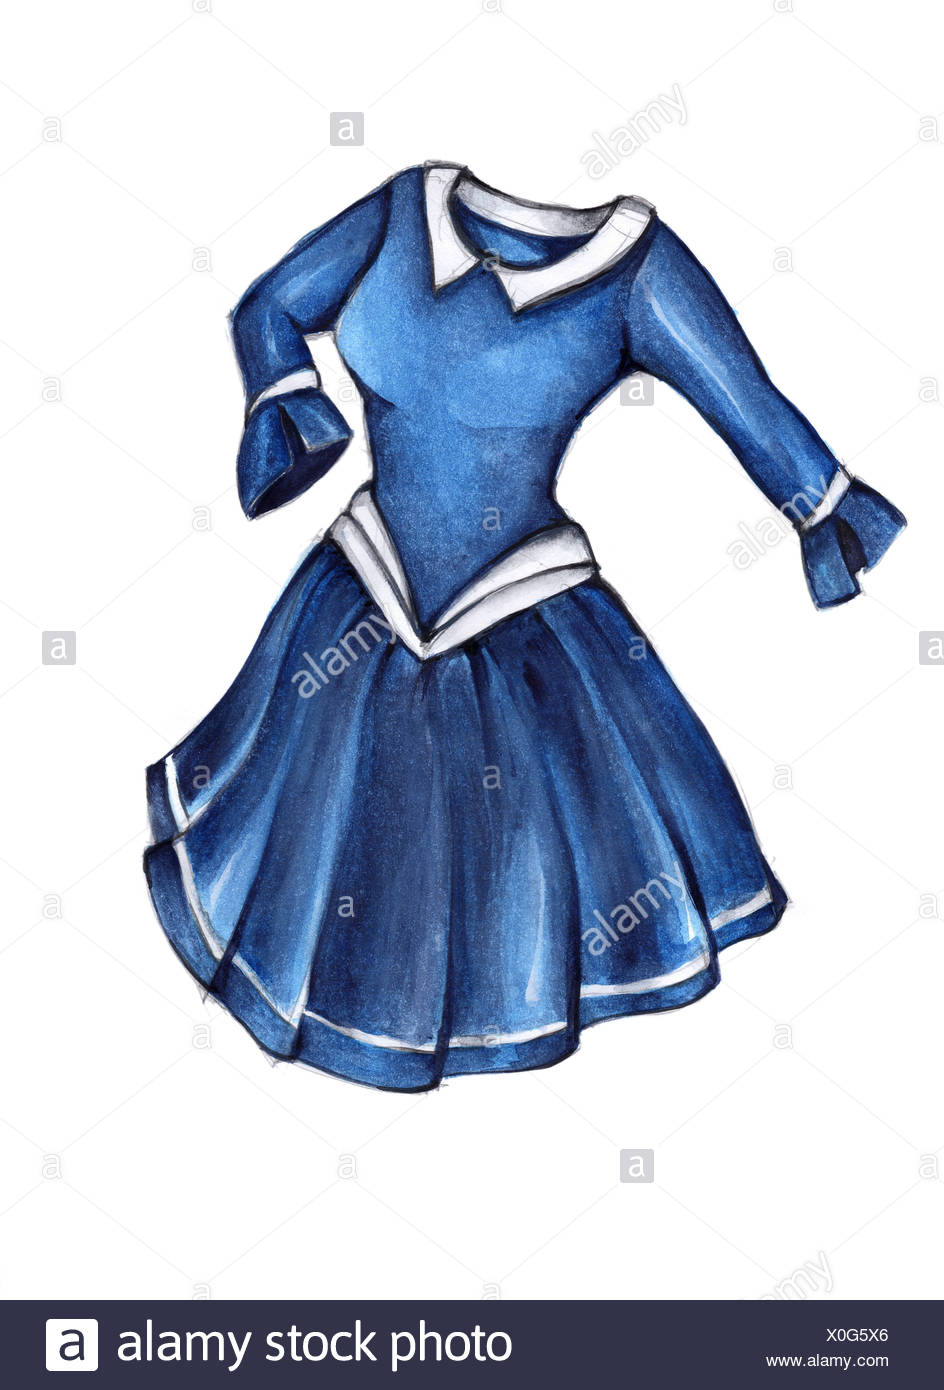 blue lady clothing